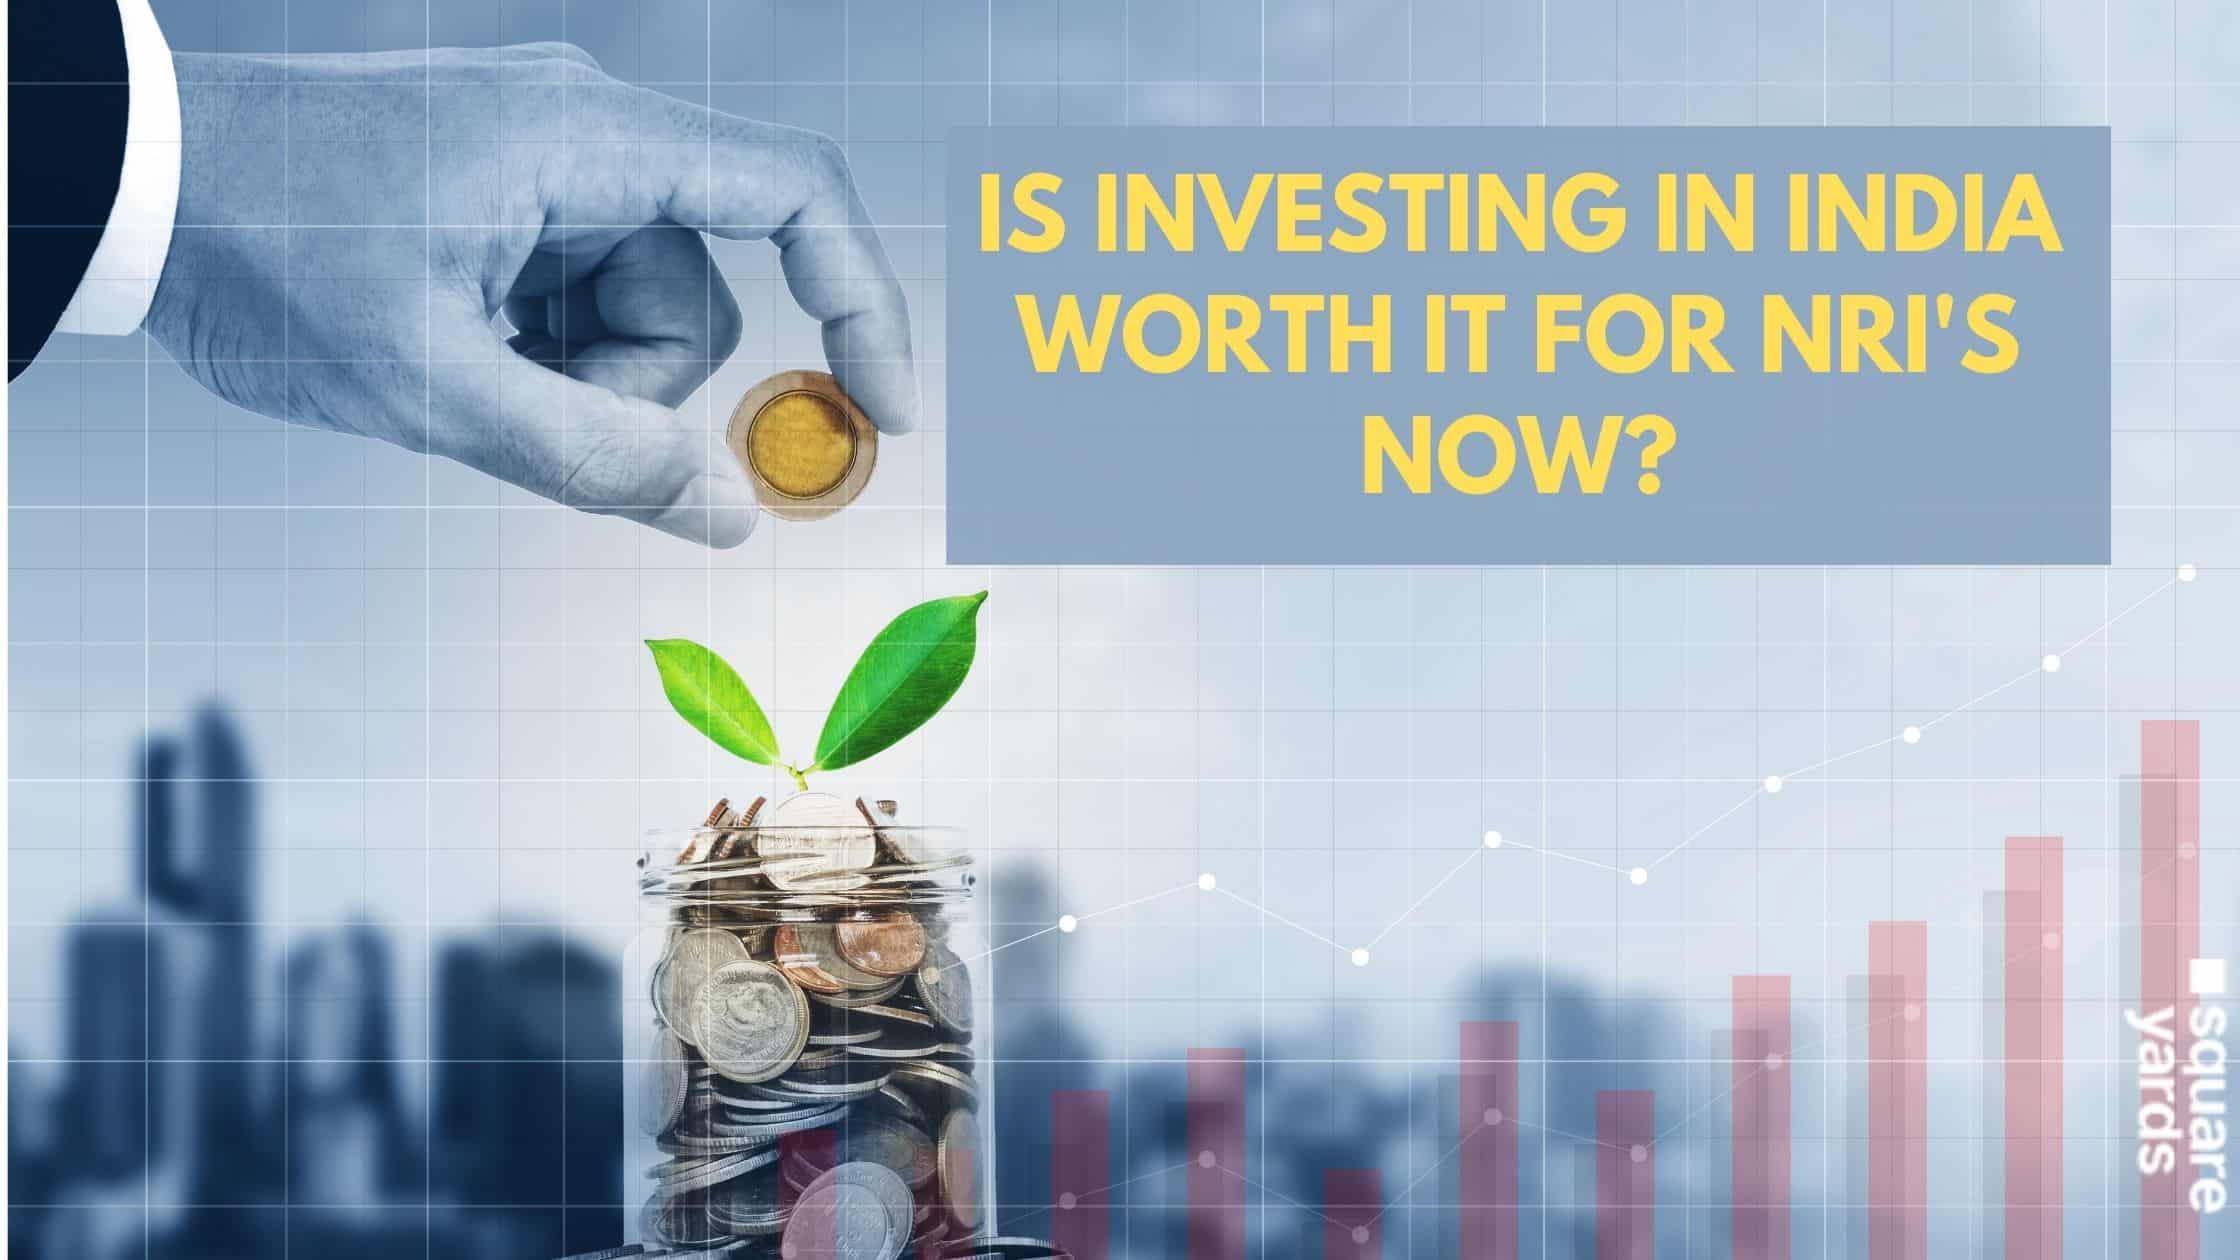 nri-investment-in-india